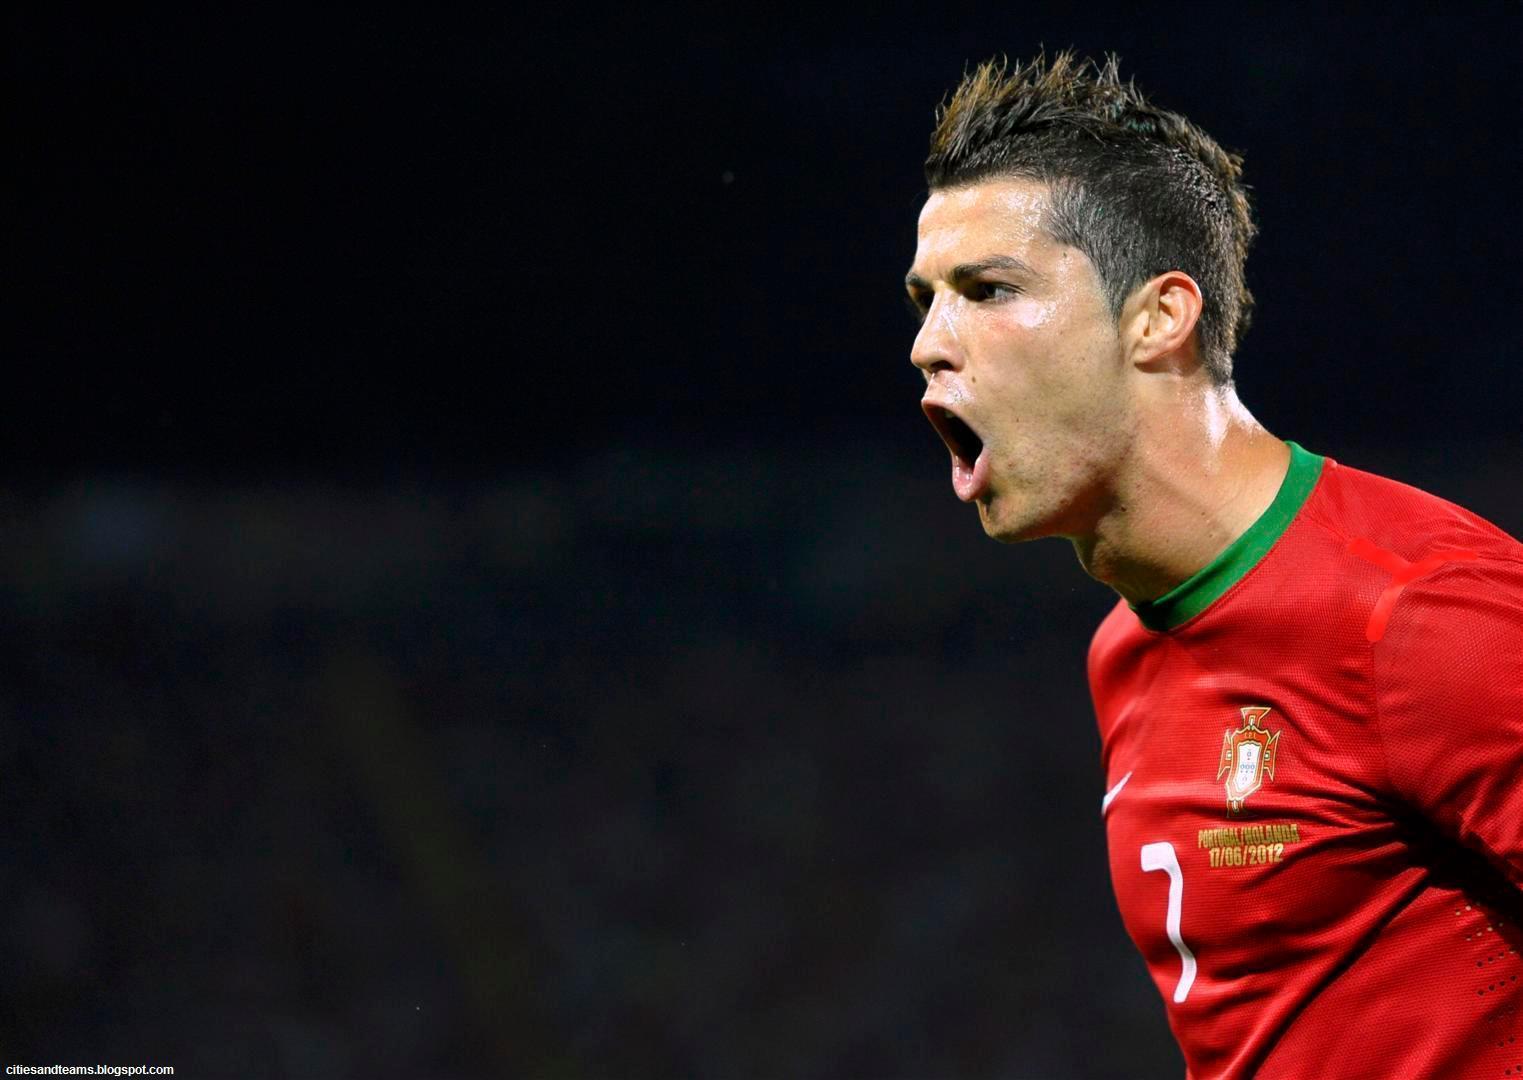 Download free Cristiano Ronaldo Wallpaper in HD